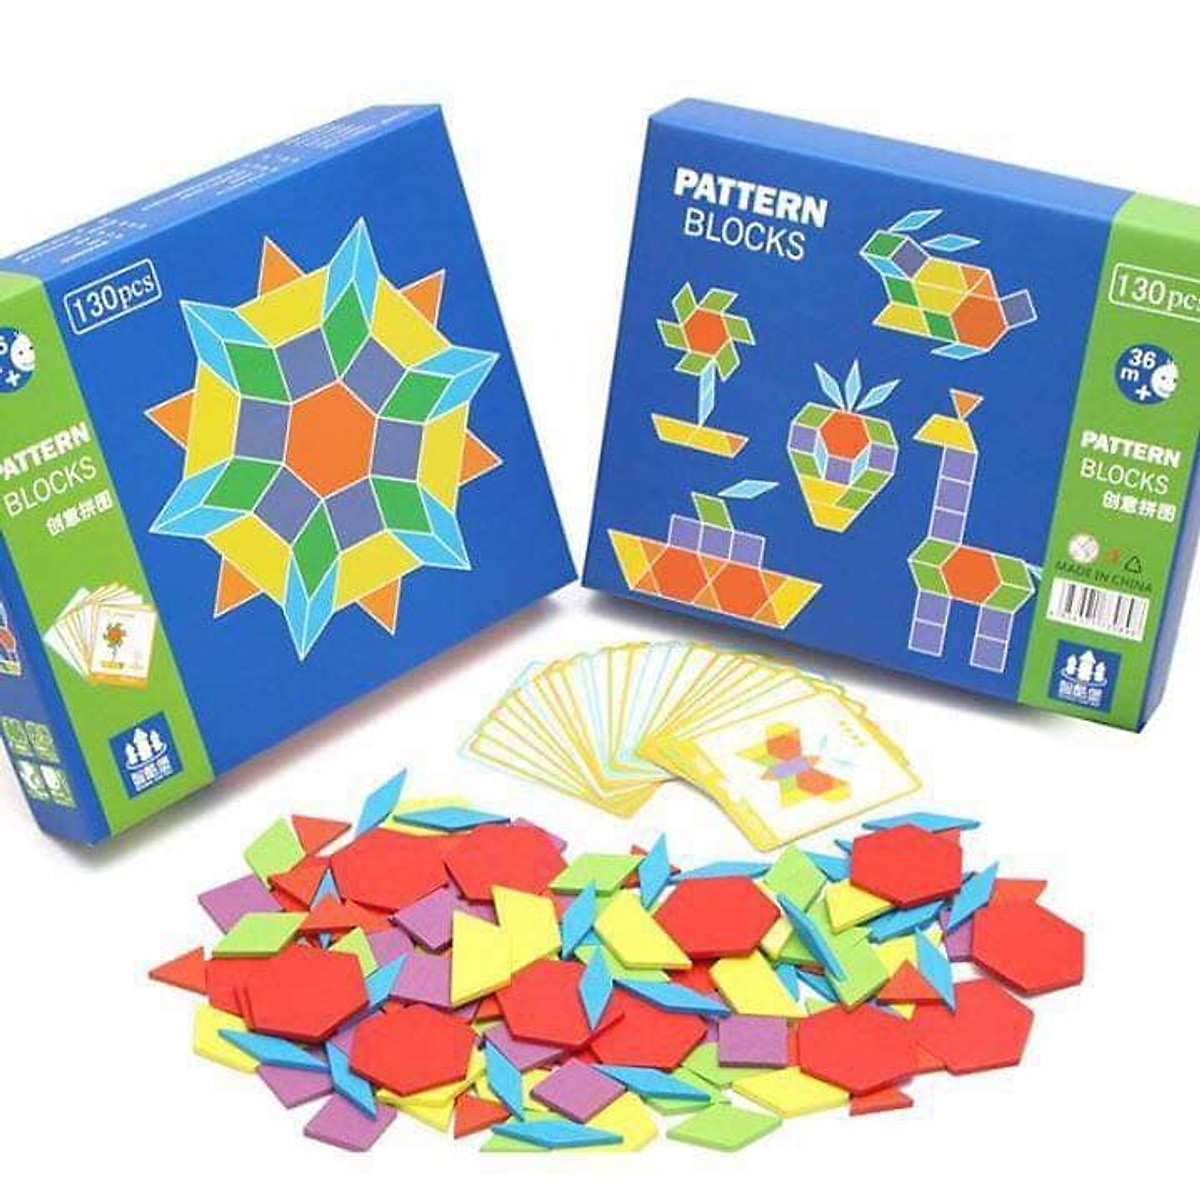 Đồ chơi xếp hình khối Pattern Block cho bé 2 tuổi